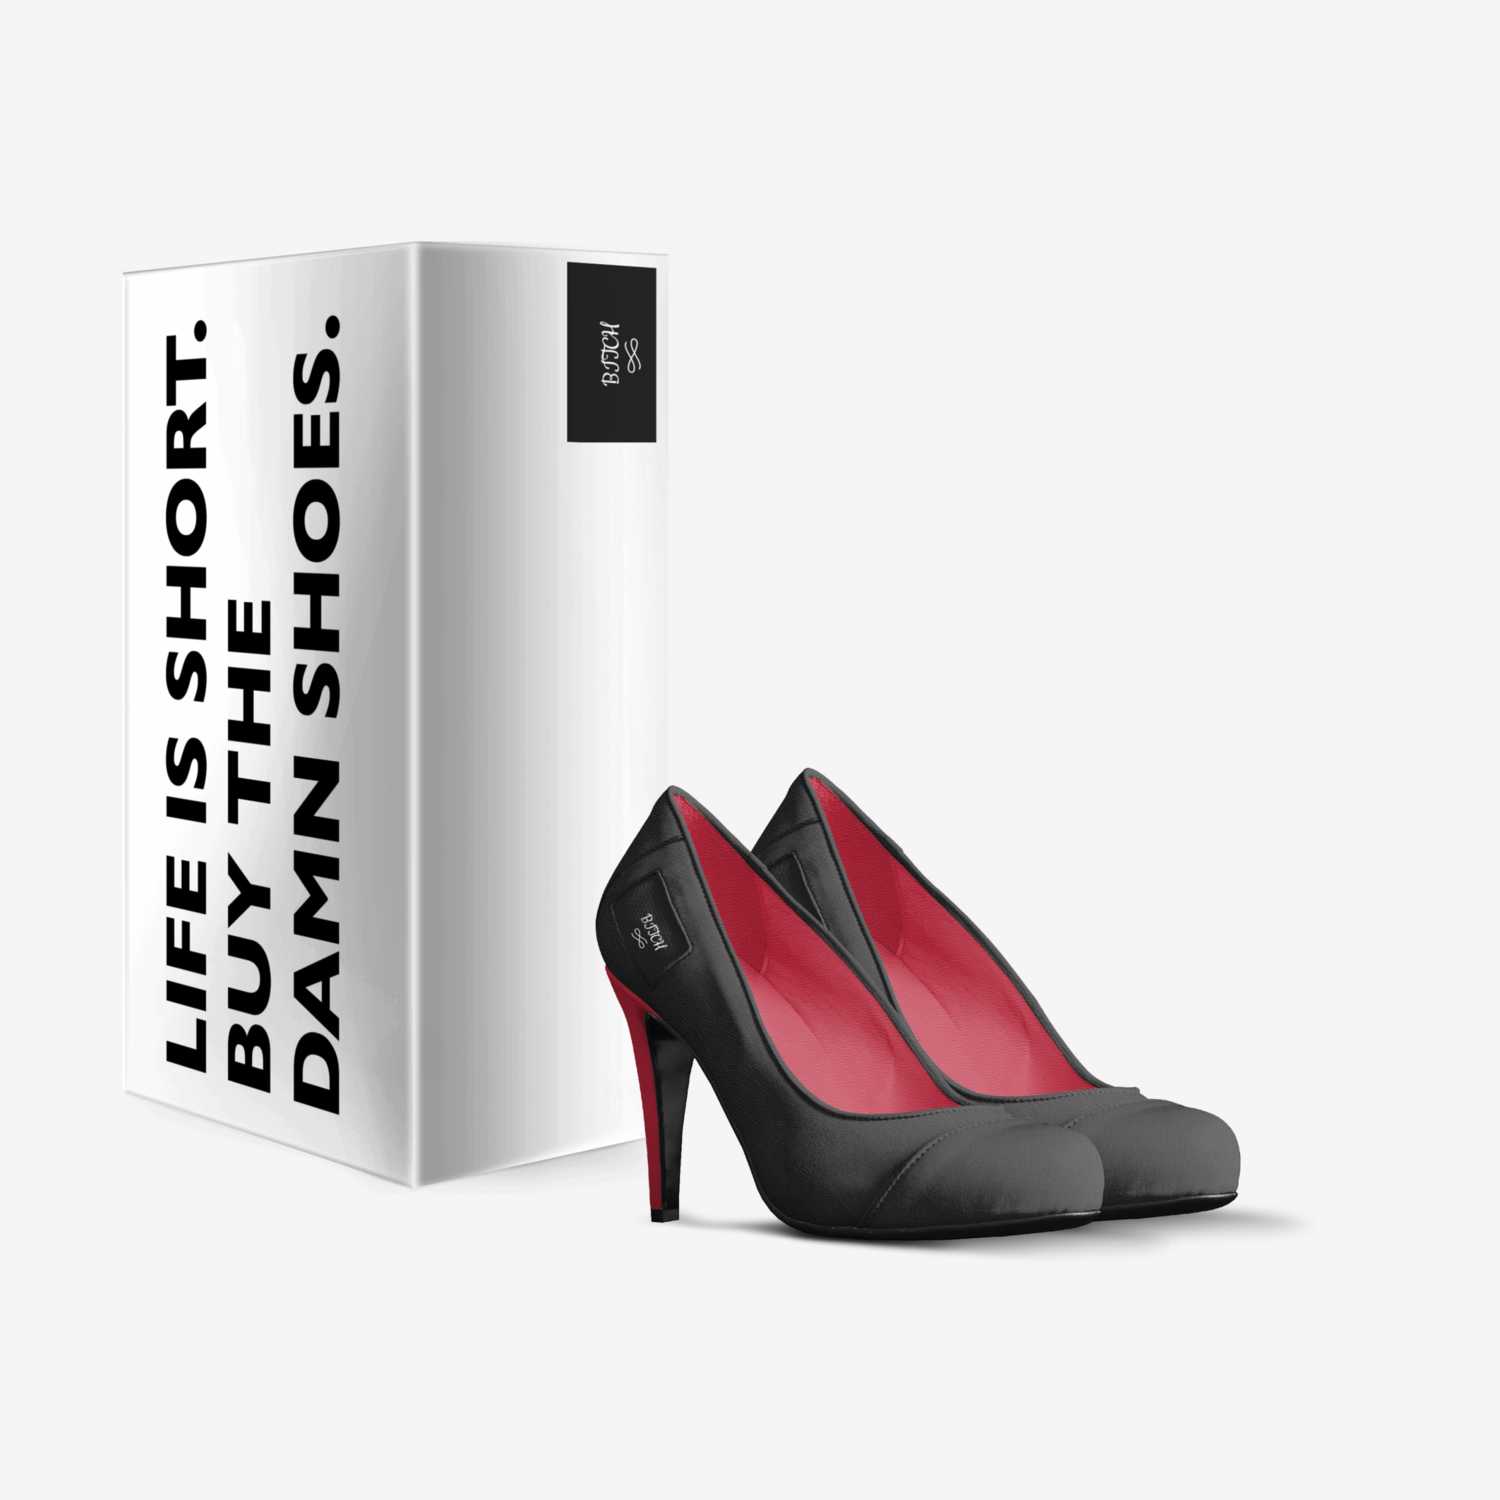 NOOOOOOOOOOOOOOOOO custom made in Italy shoes by Thomas Neville | Box view